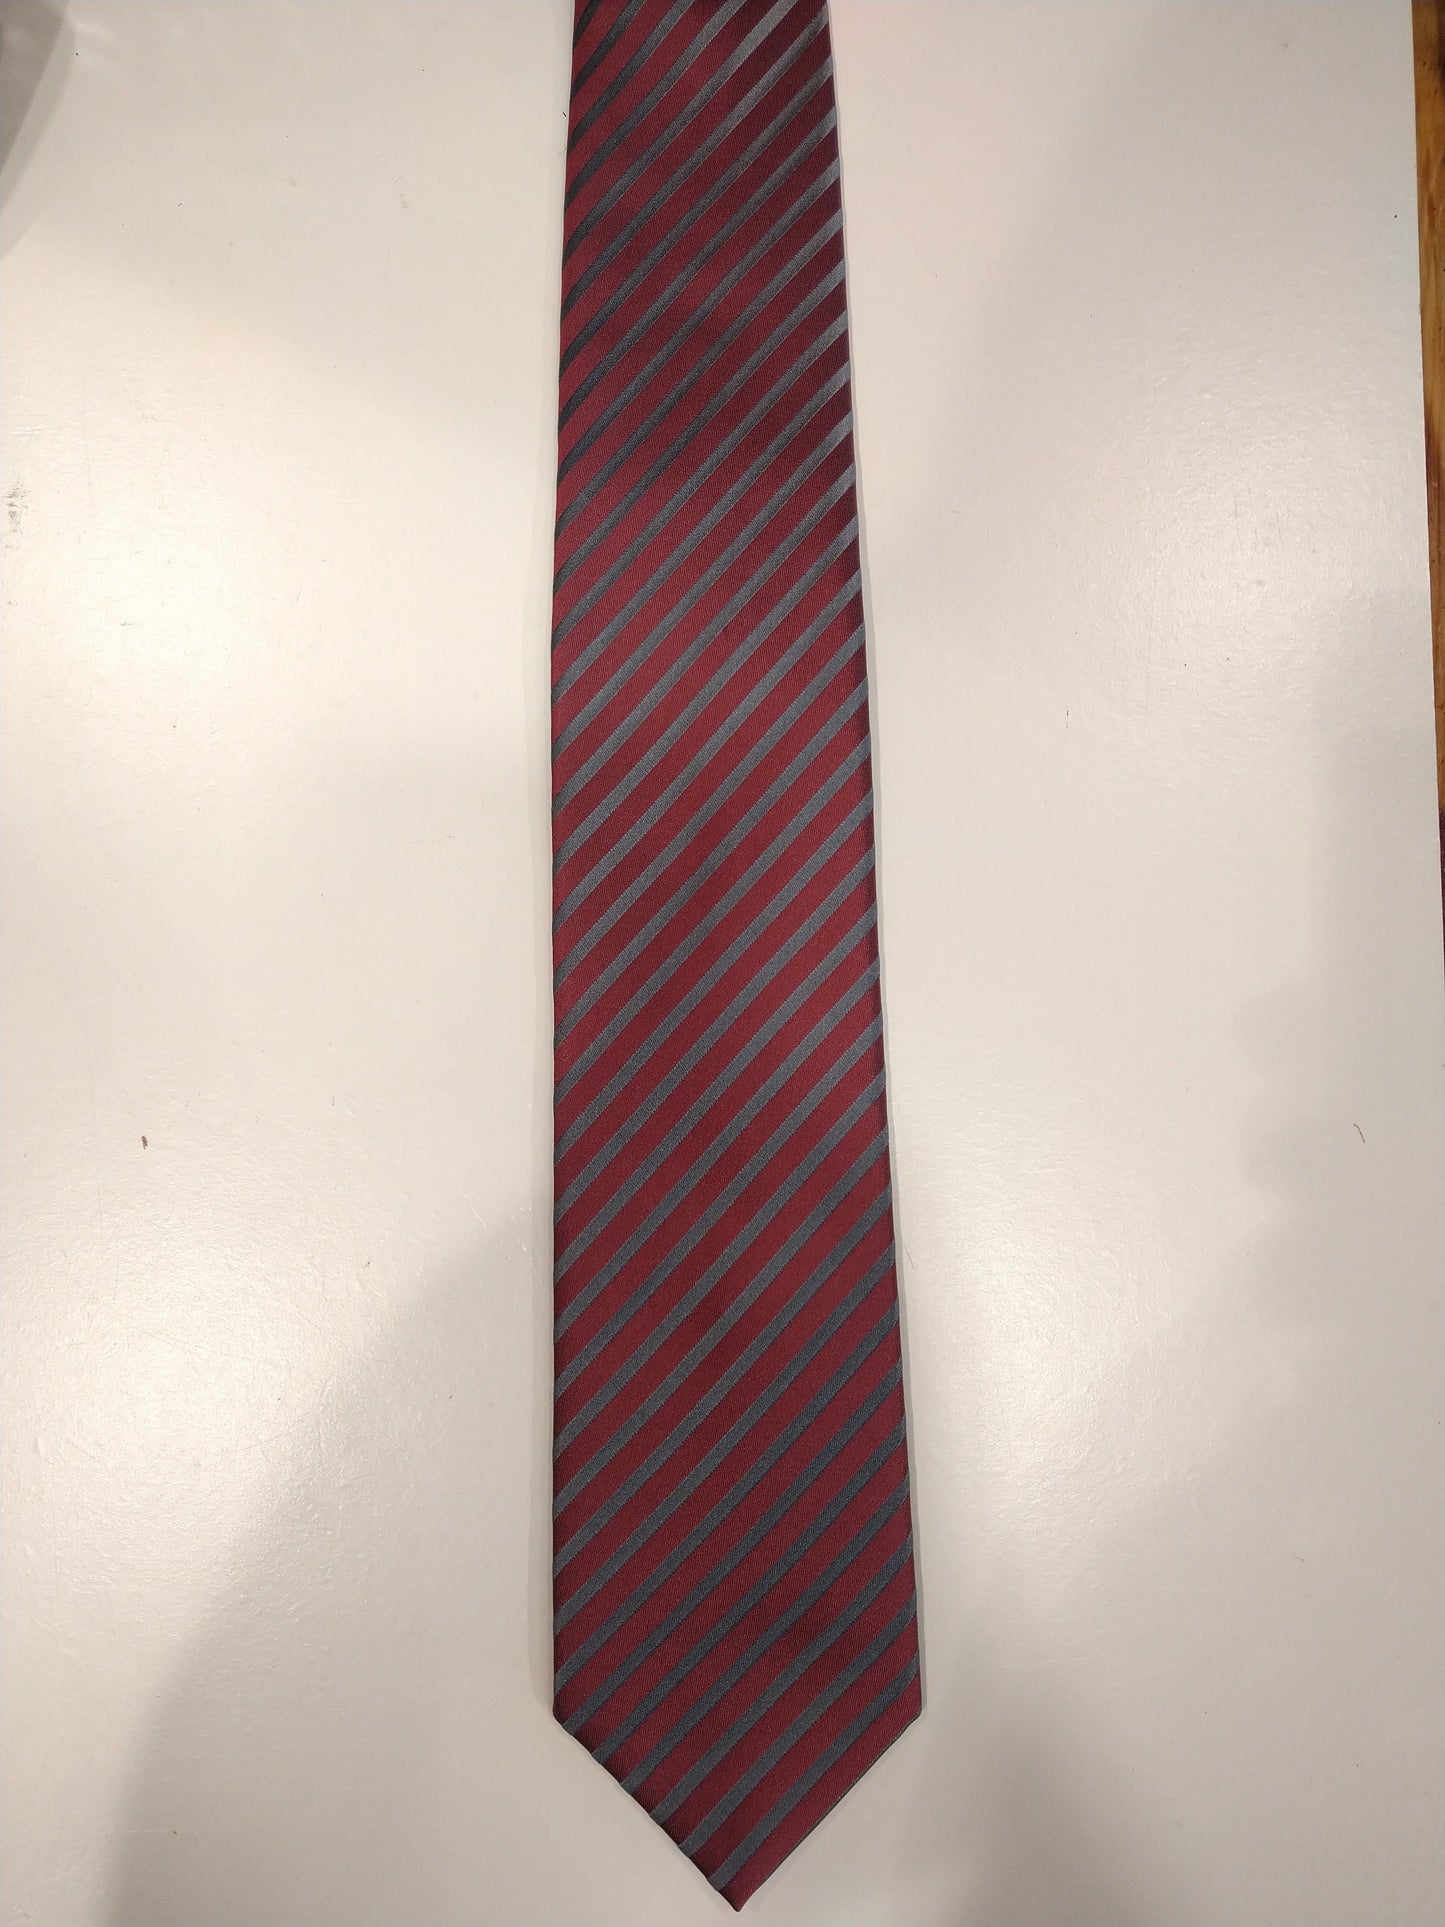 Cravatta di seta olimpica. Strisce rosa / grigio.